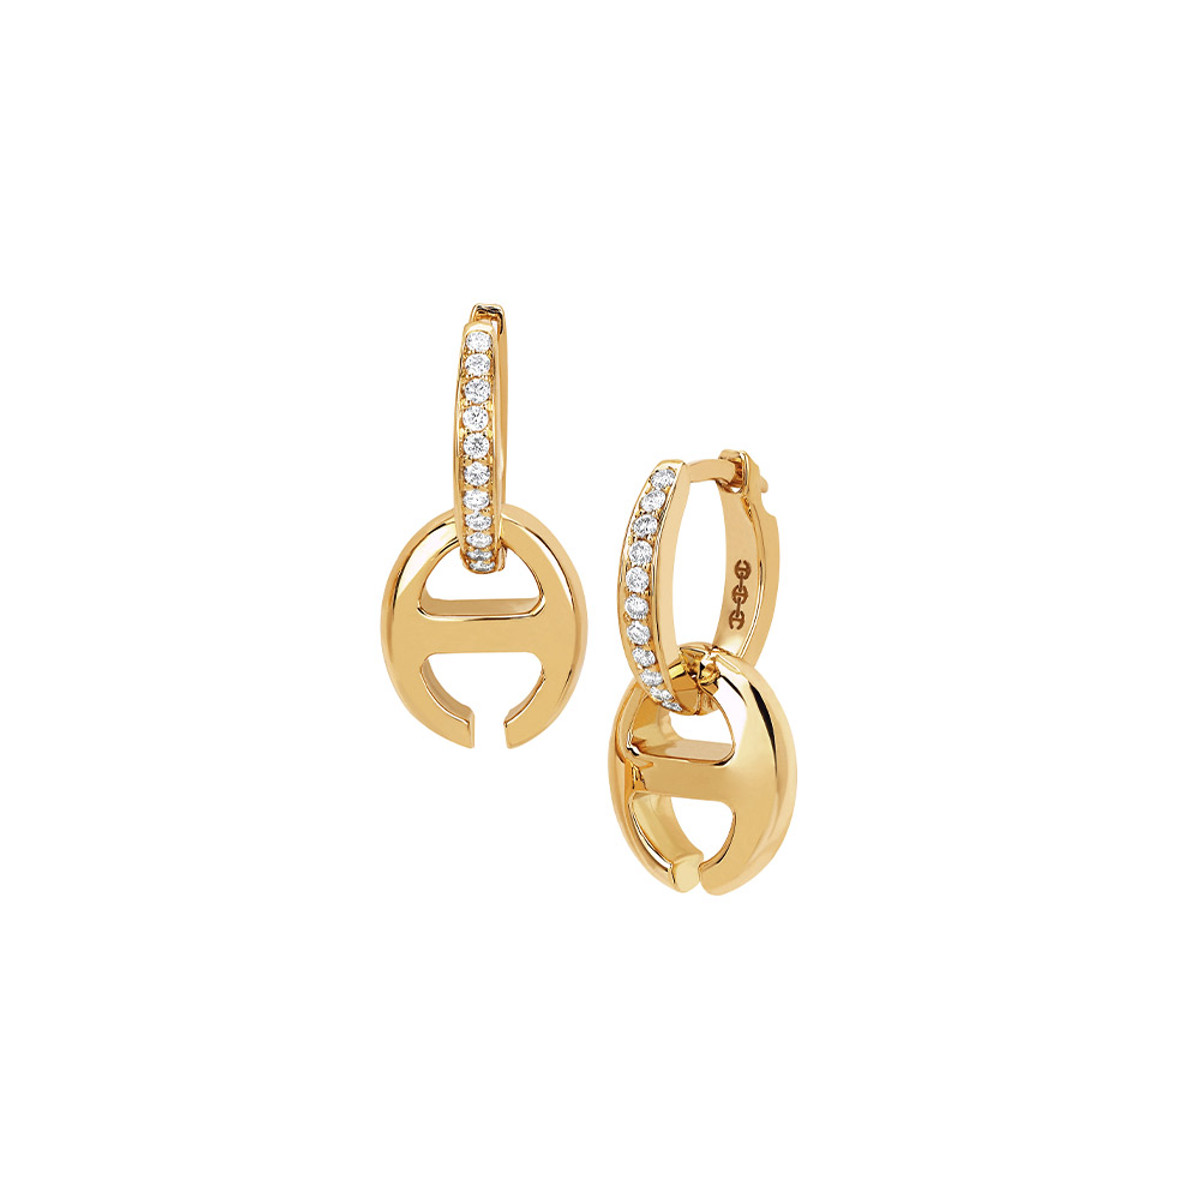 Hoorsenbuhs 18K Yellow Gold Klaasp Diamond Earrings-57471 Product Image